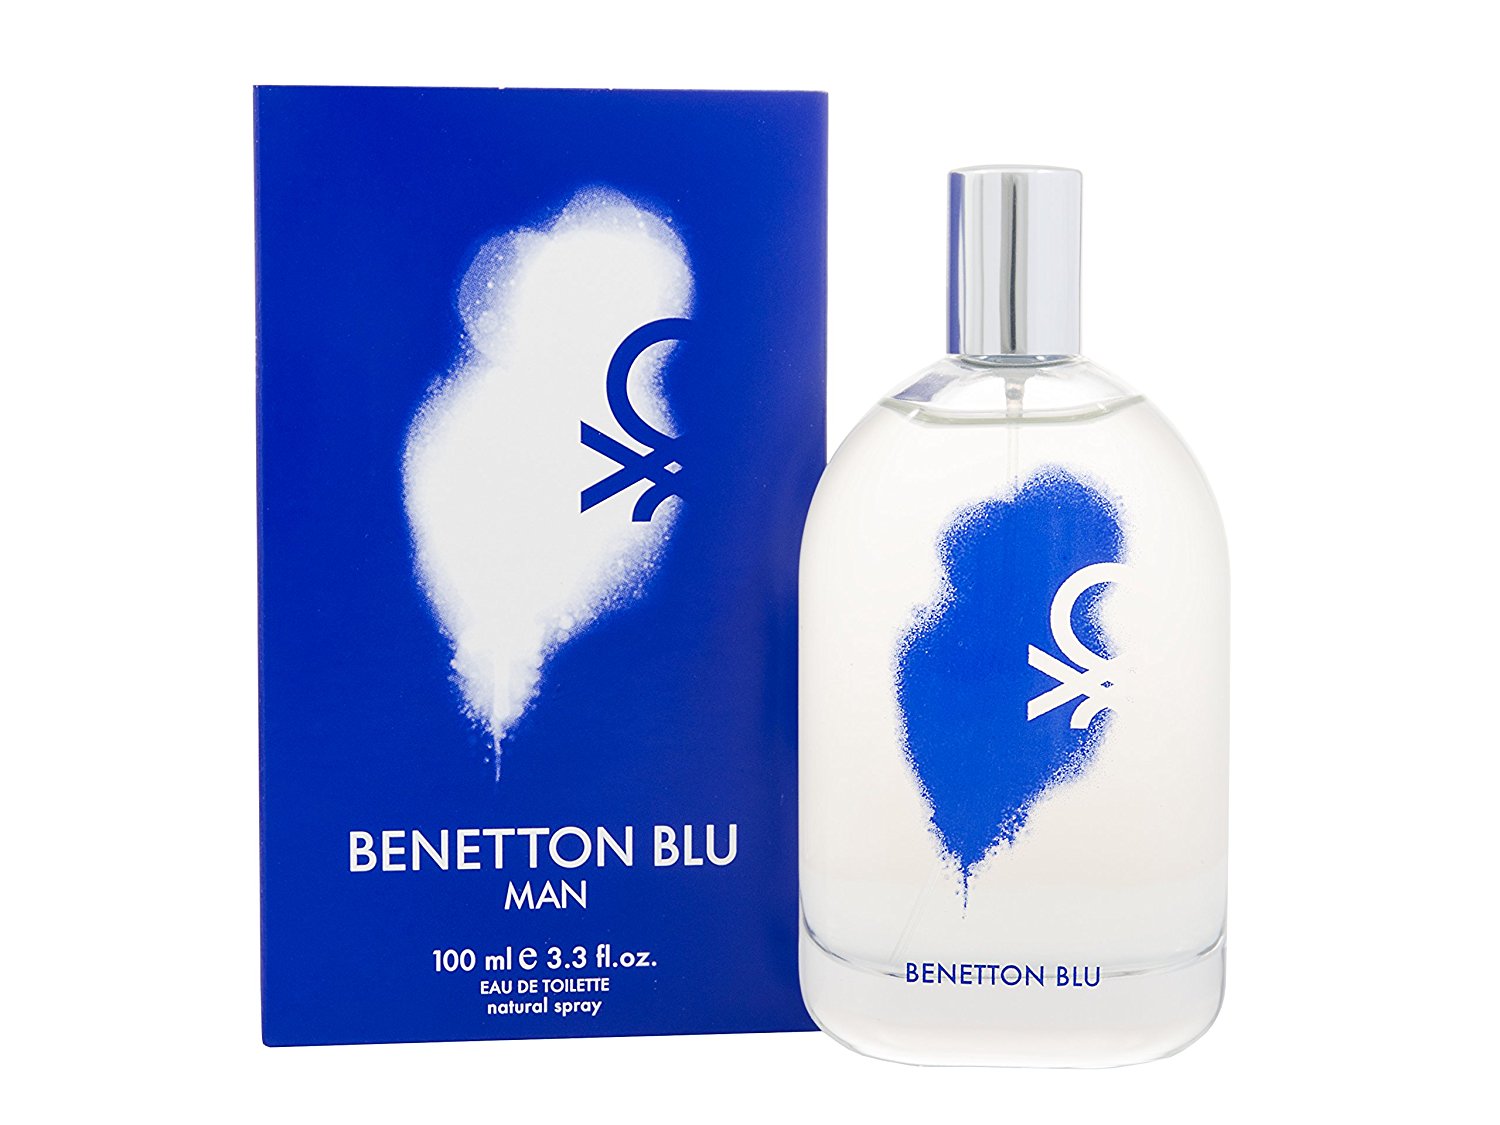 Benetton Blu